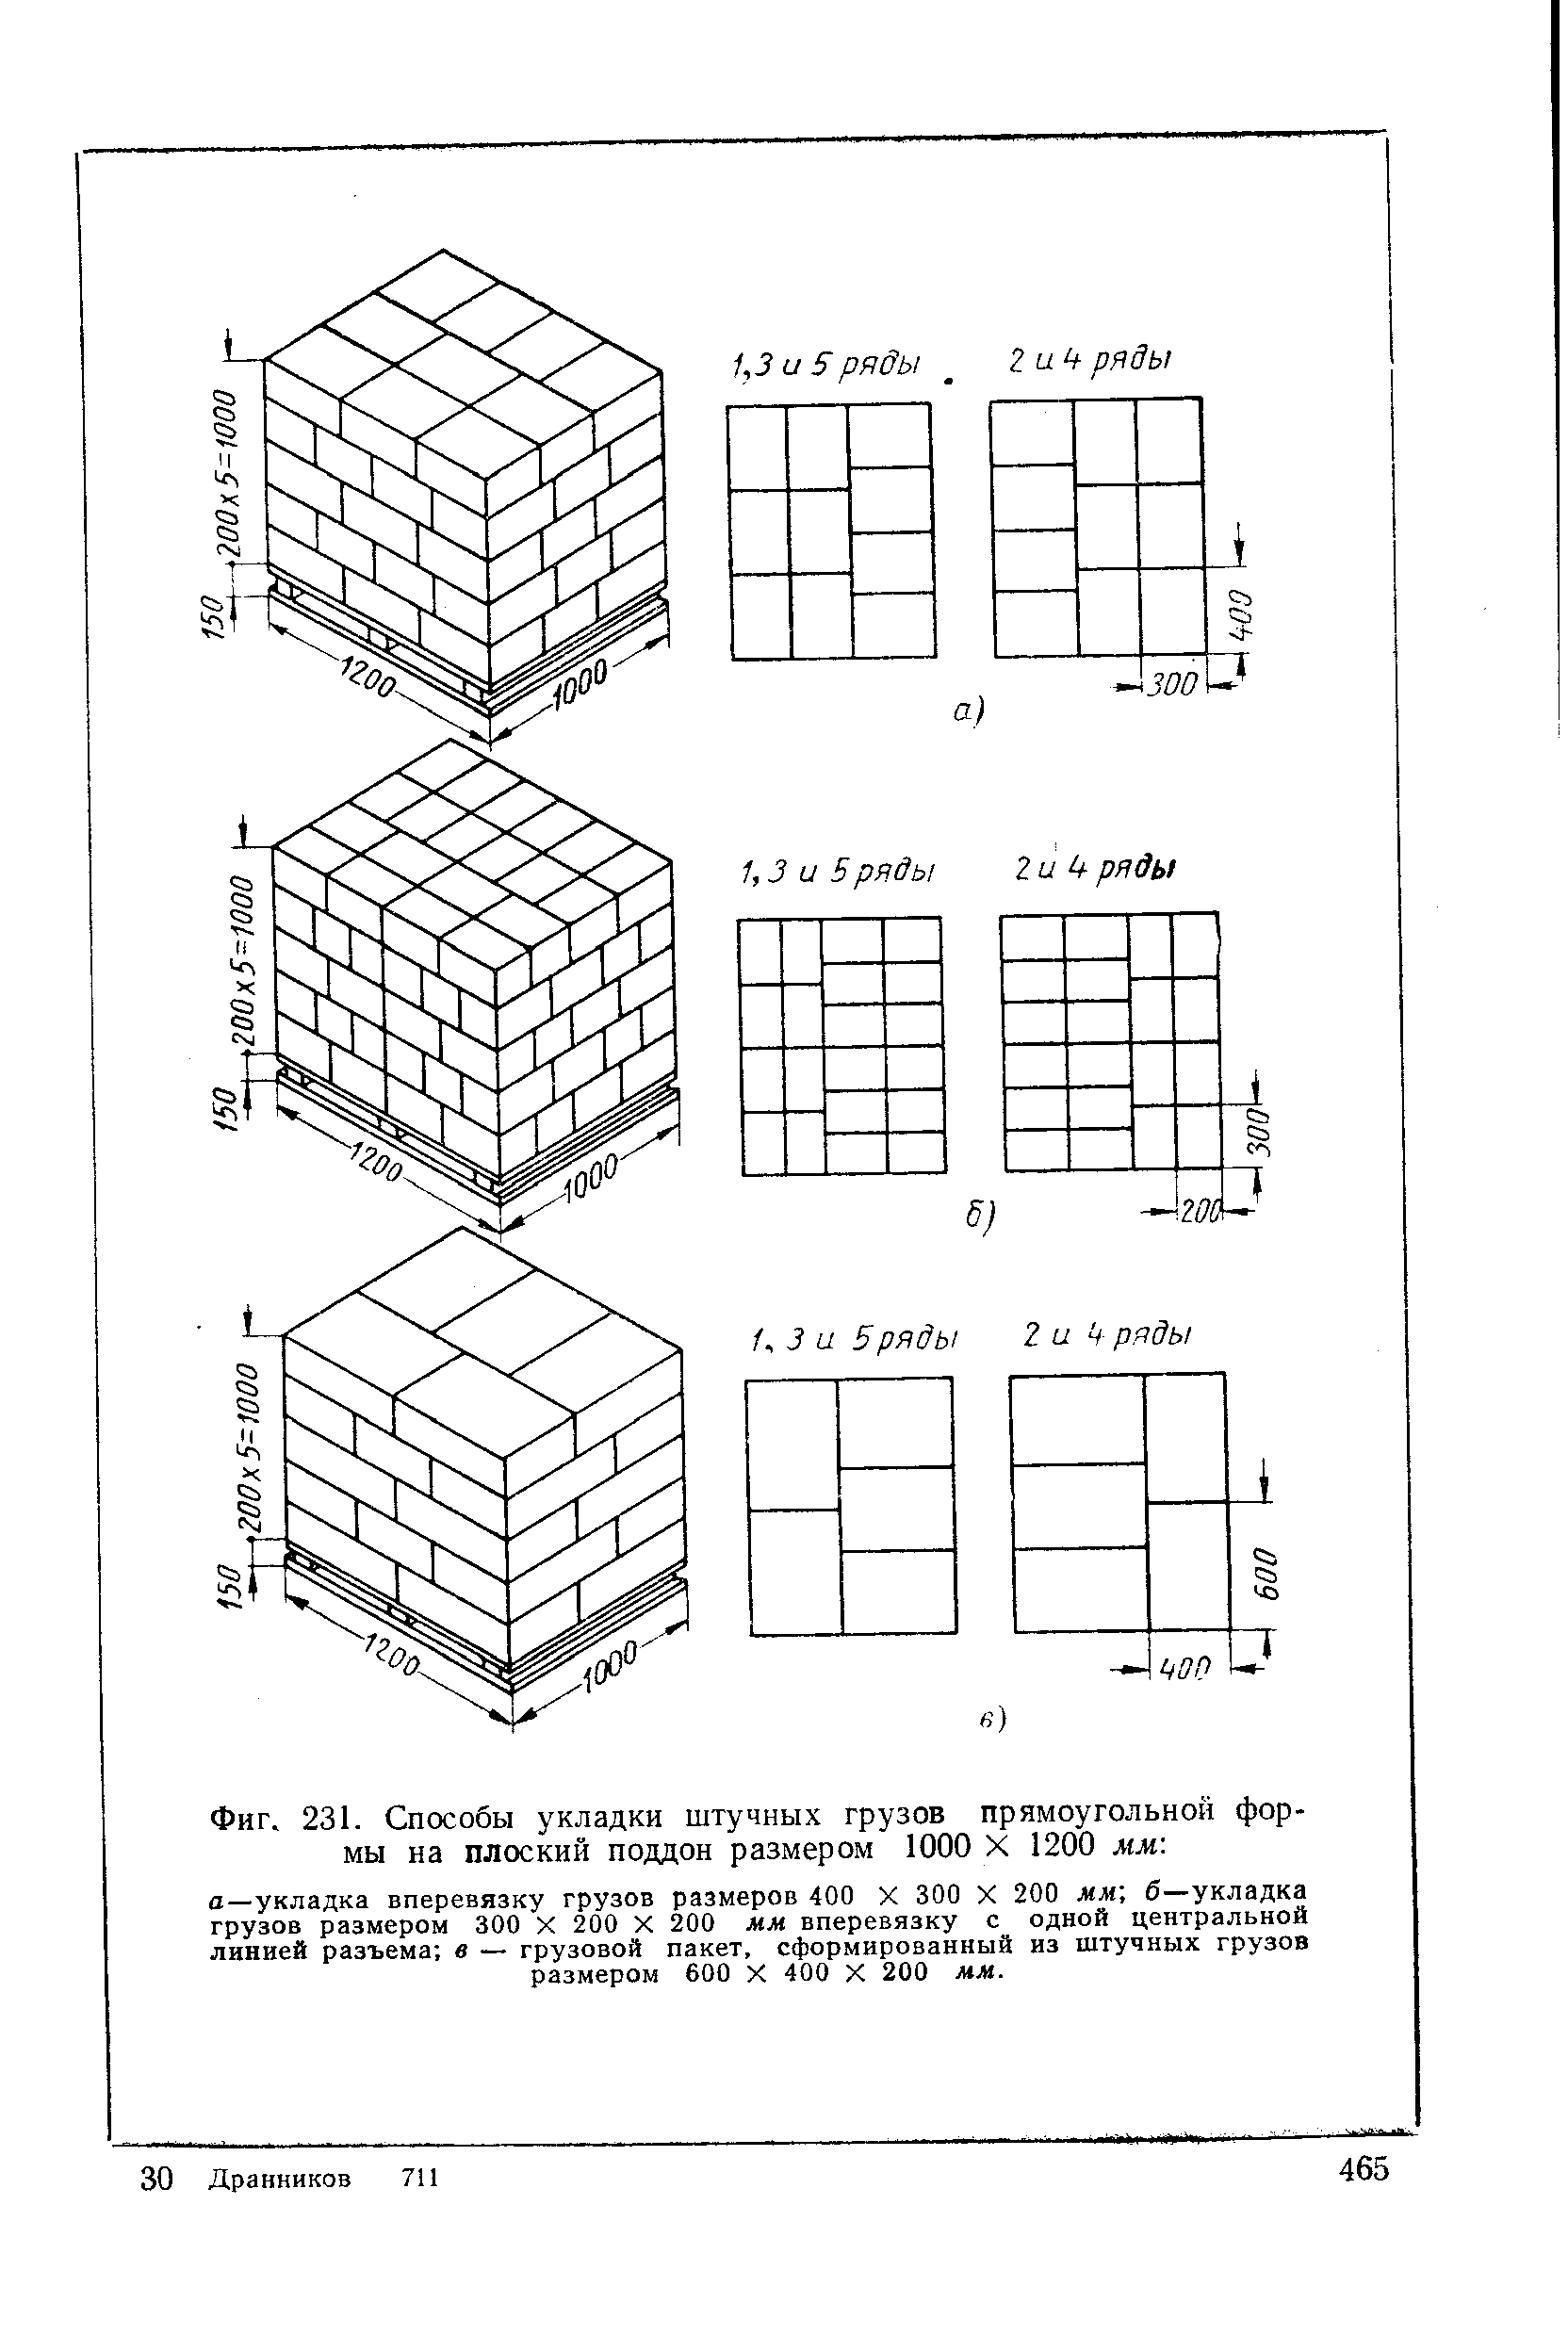 Схема складирования кирпича на поддонах - 94 фото